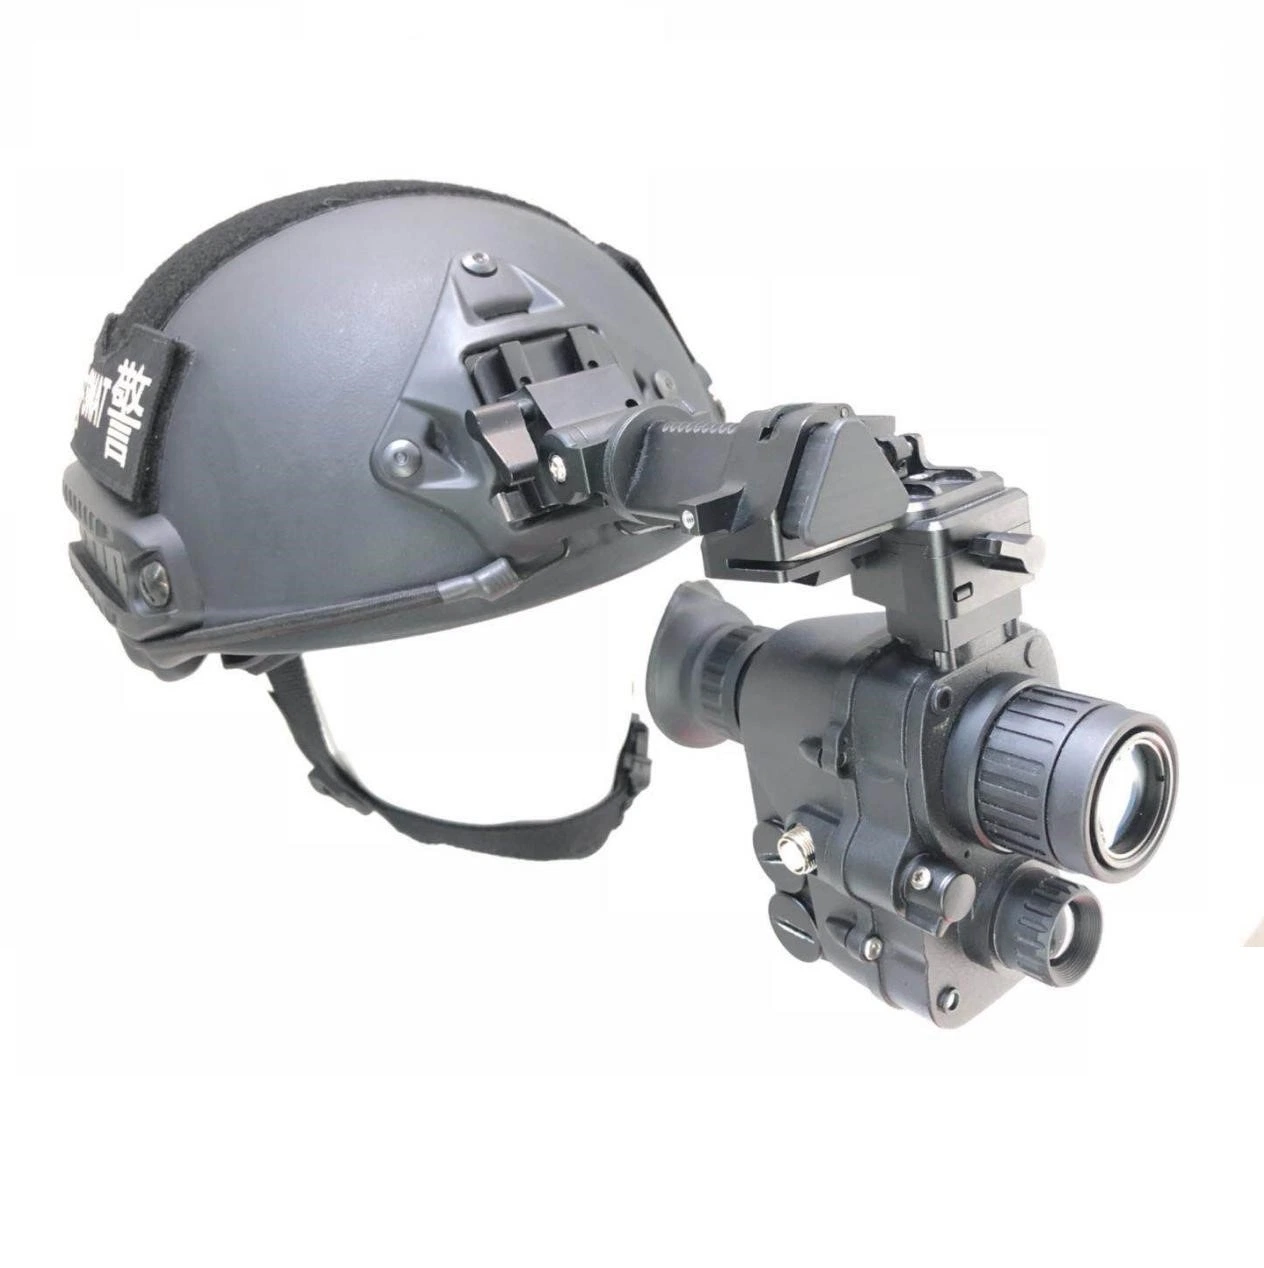 Imageur thermique infrarouge/Faible Light-Level fondue portée monté sur casque de vision nocturne